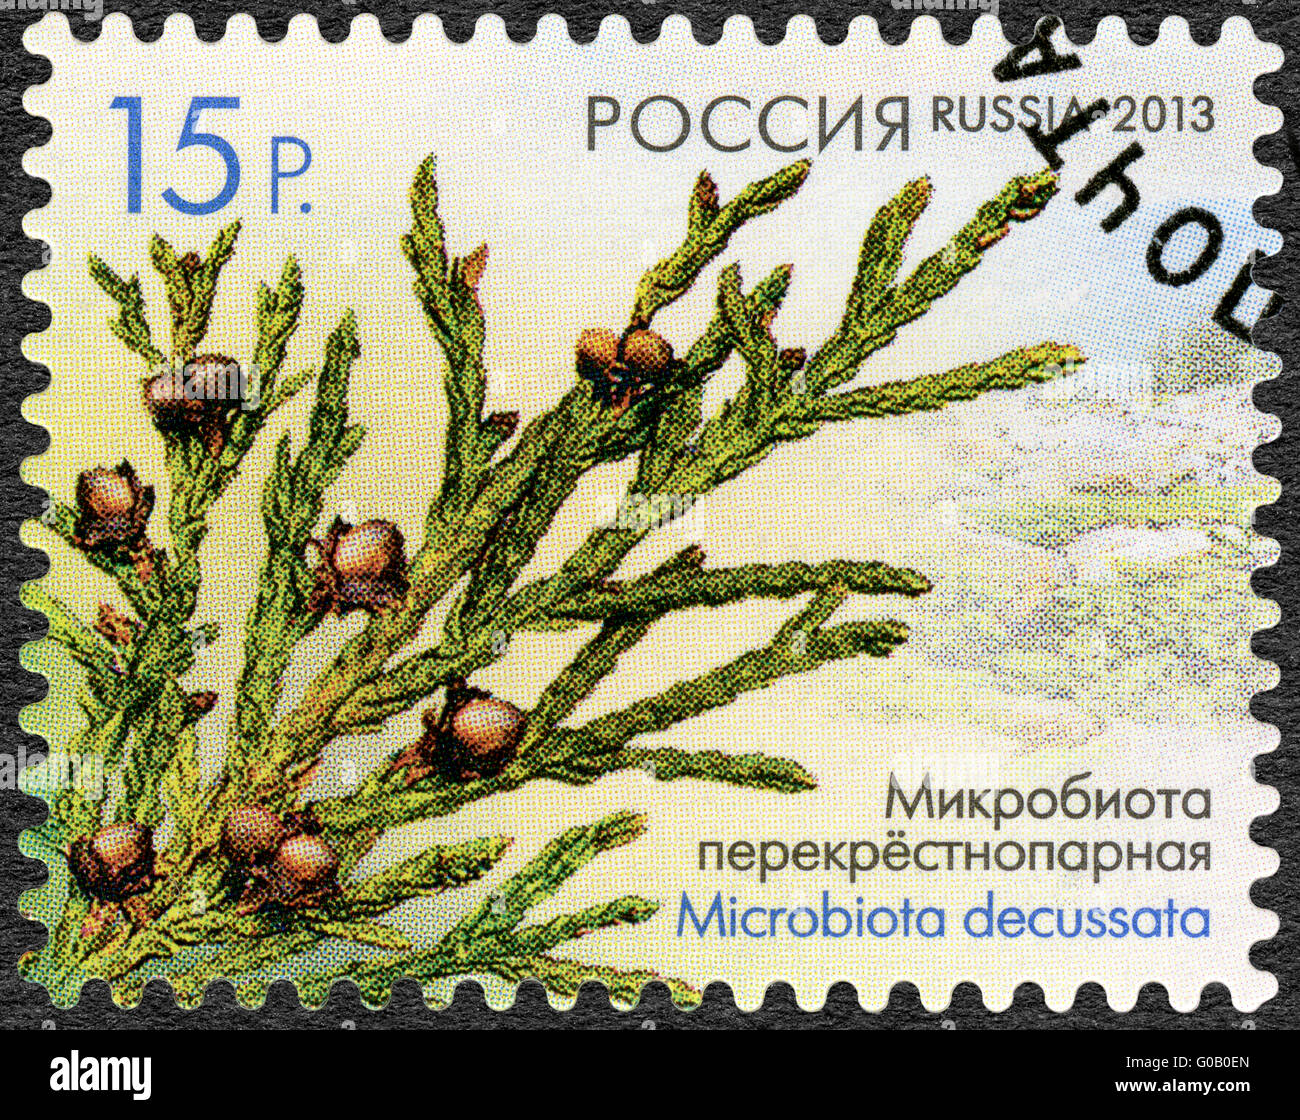 Russie - 2013 : montre Microbiota decussata, série de la flore de la Russie, de cônes de conifères et d'arbustes Banque D'Images